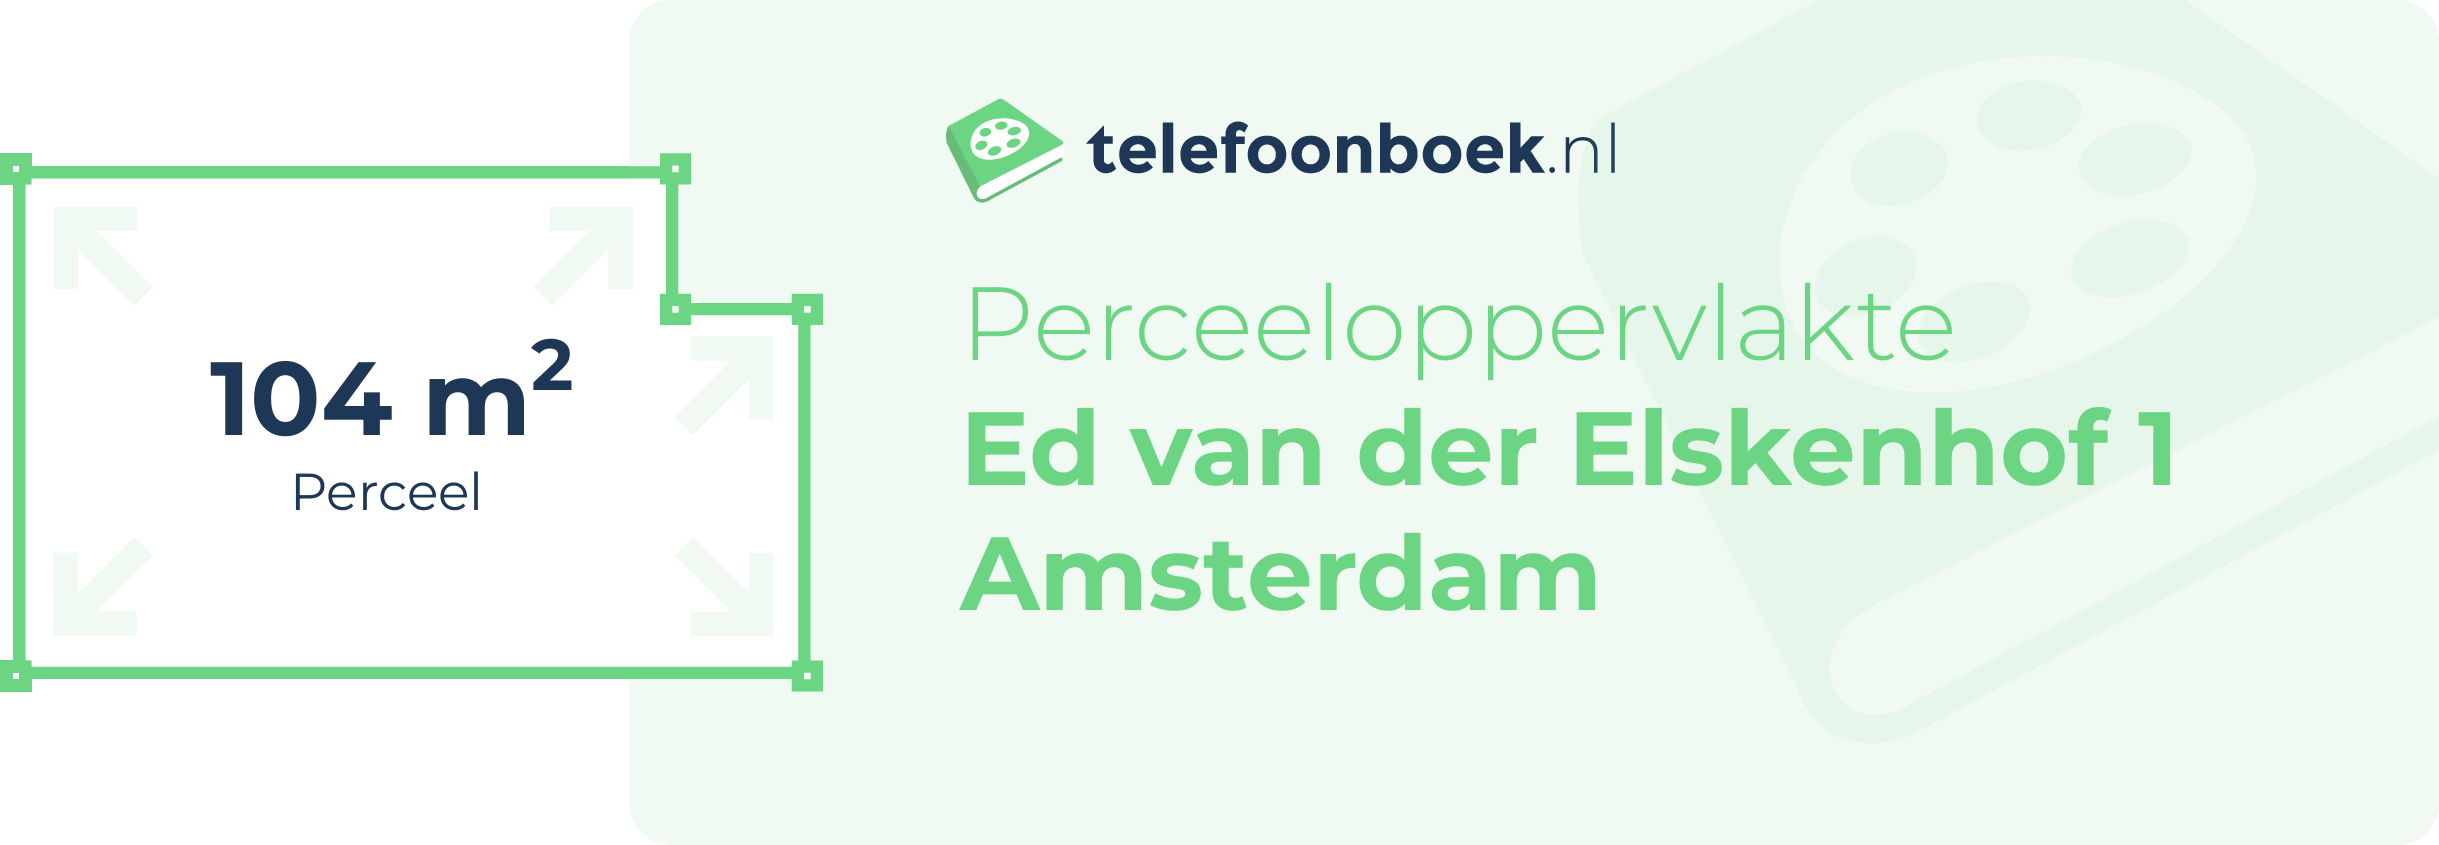 Perceeloppervlakte Ed Van Der Elskenhof 1 Amsterdam